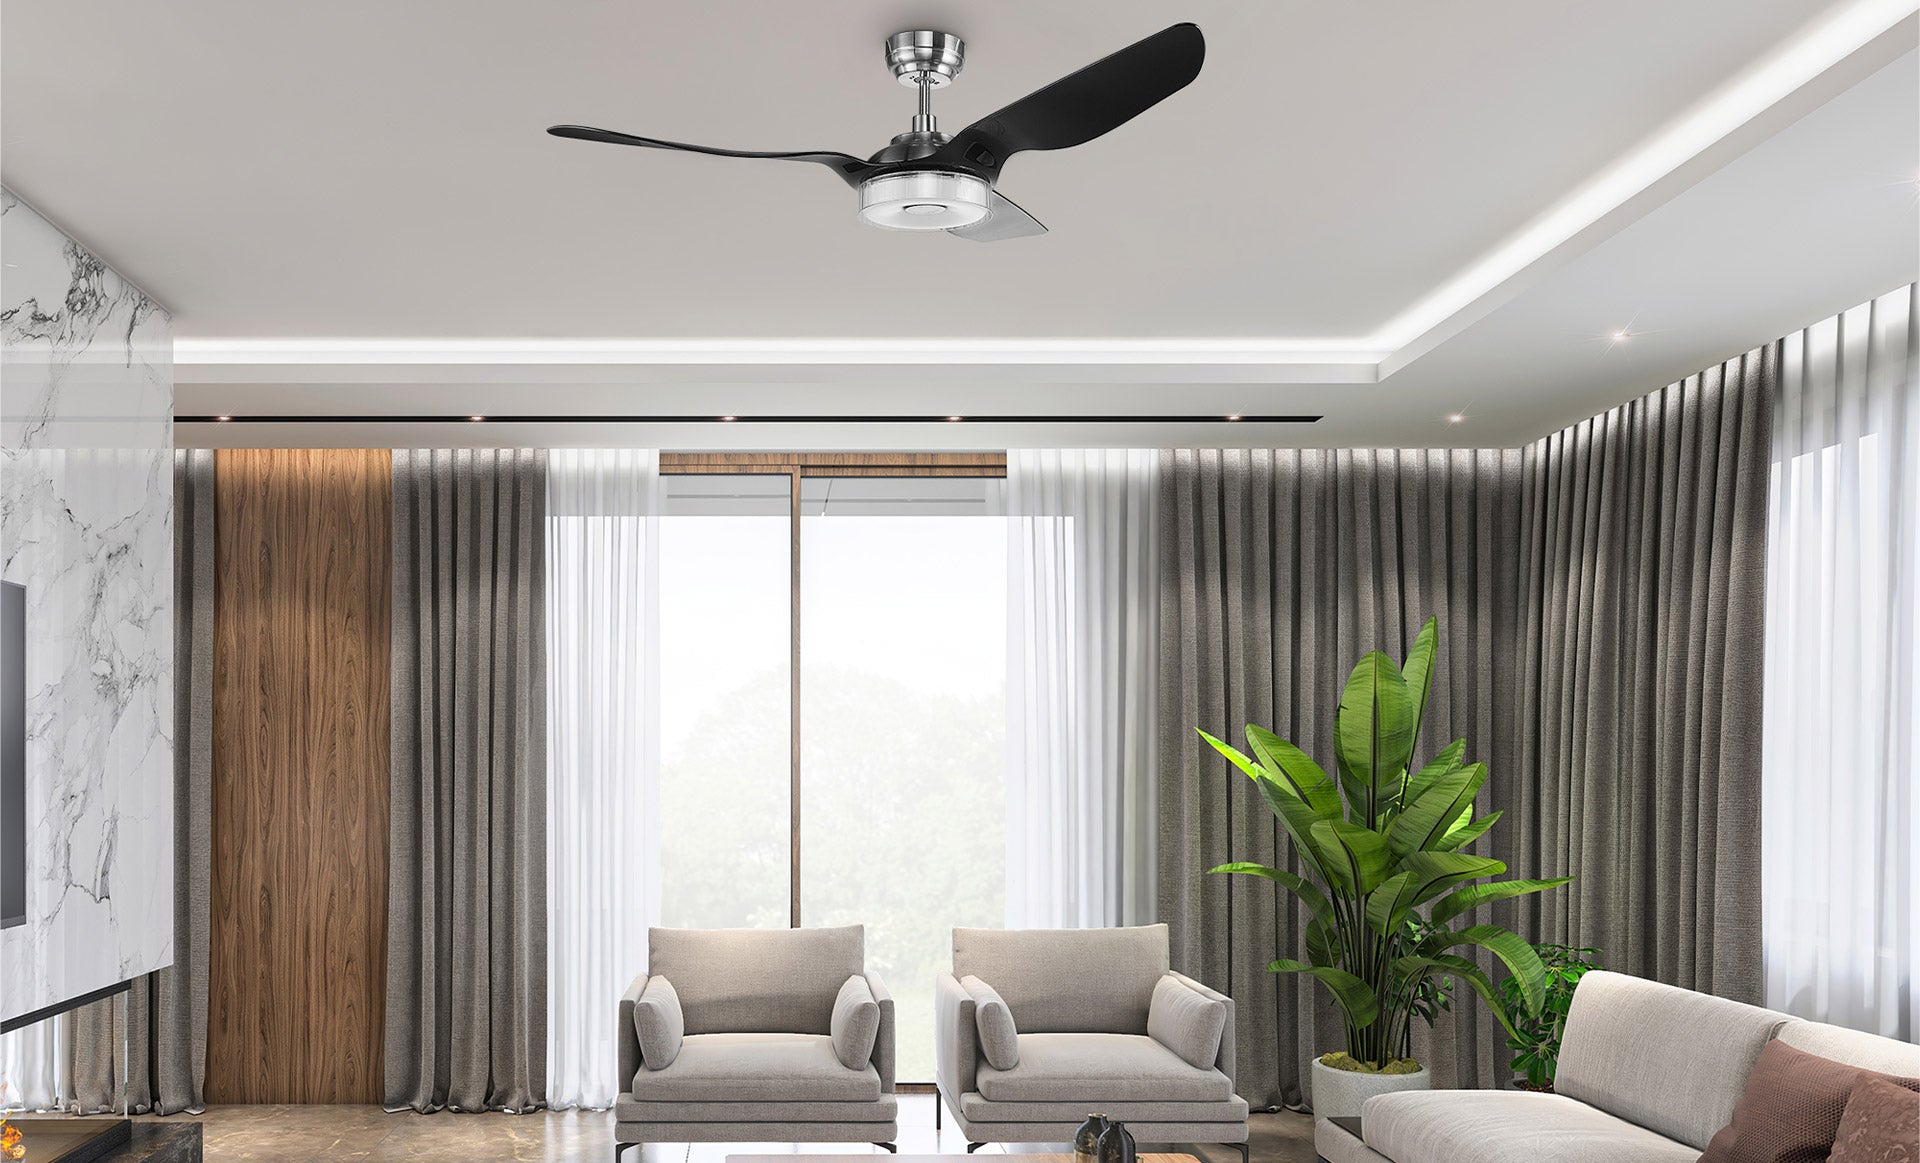 smafan smart modern ceiling fan